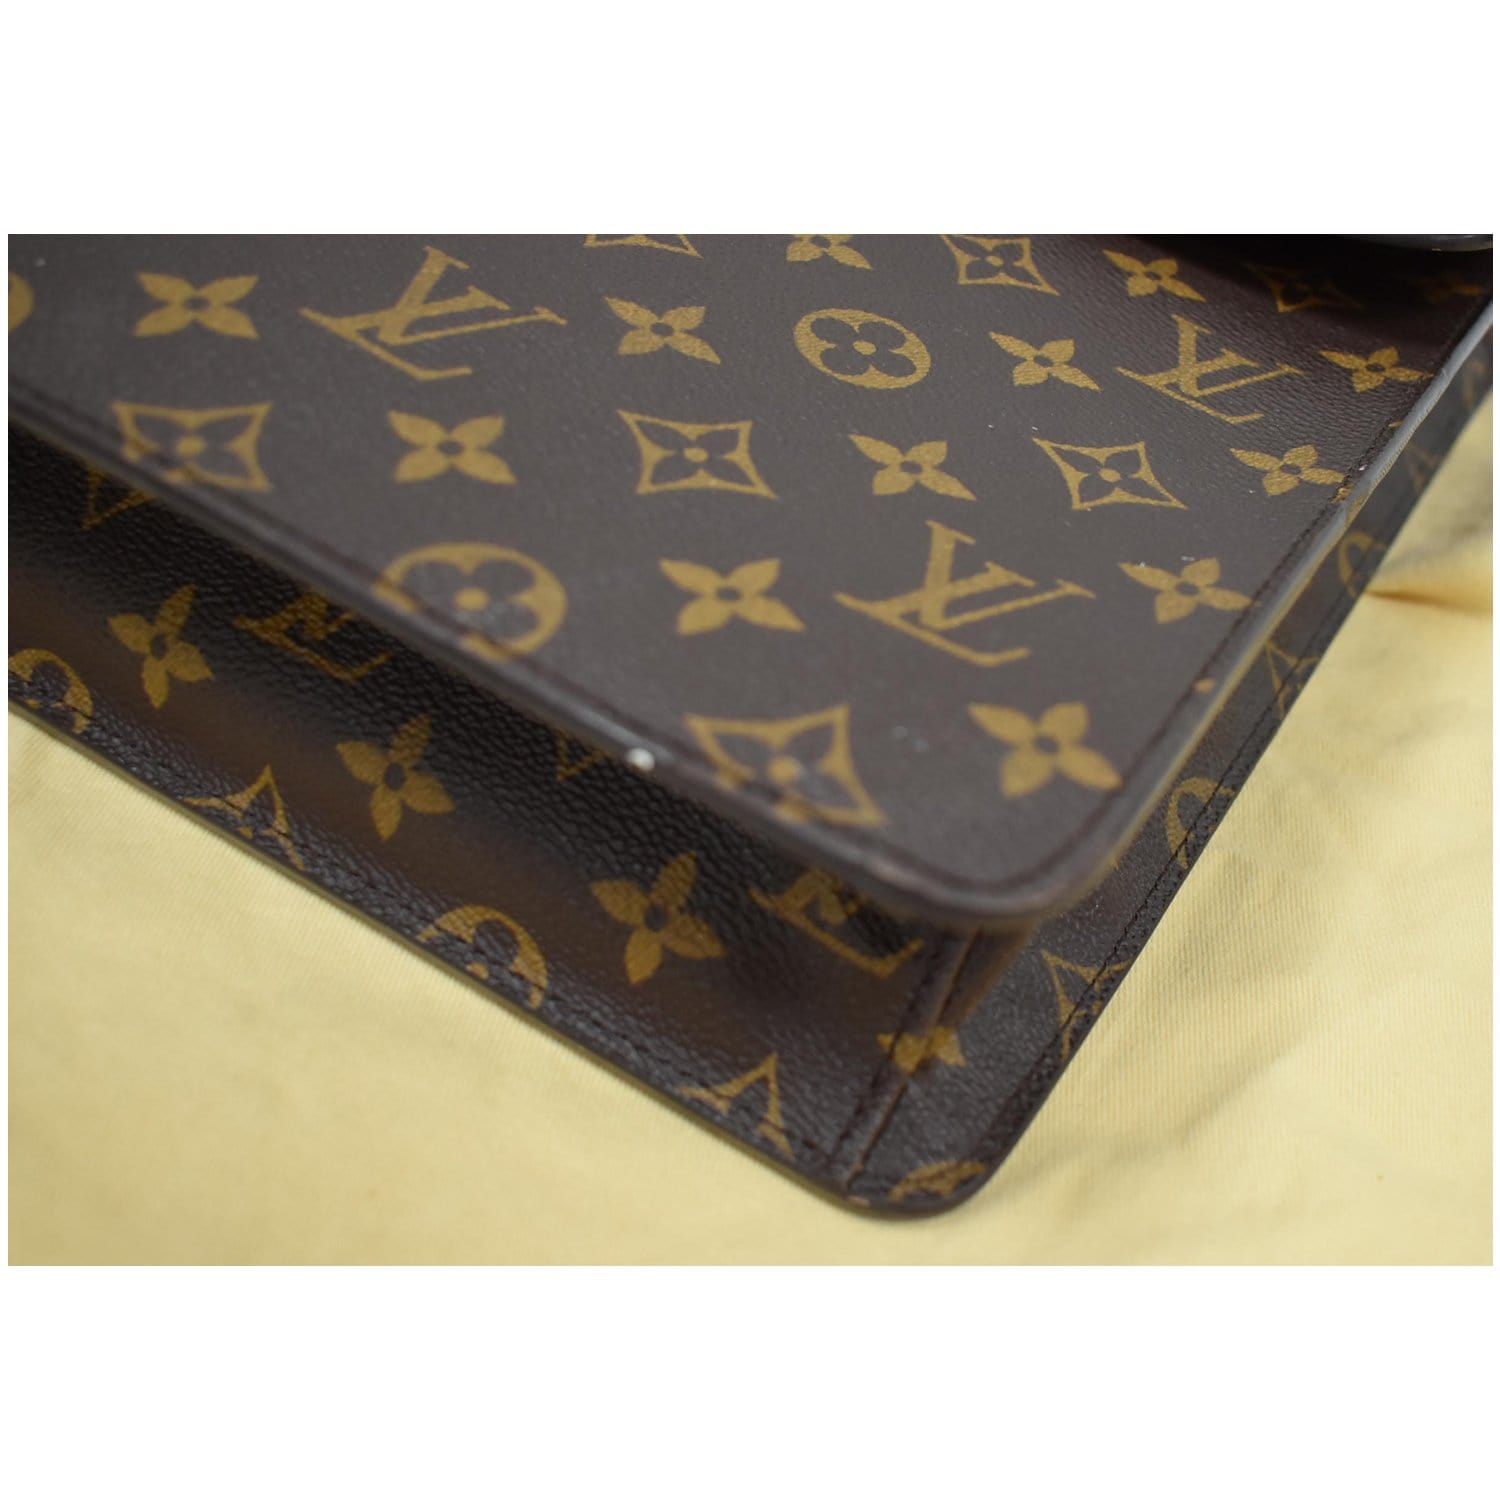 laguito monogram briefcase